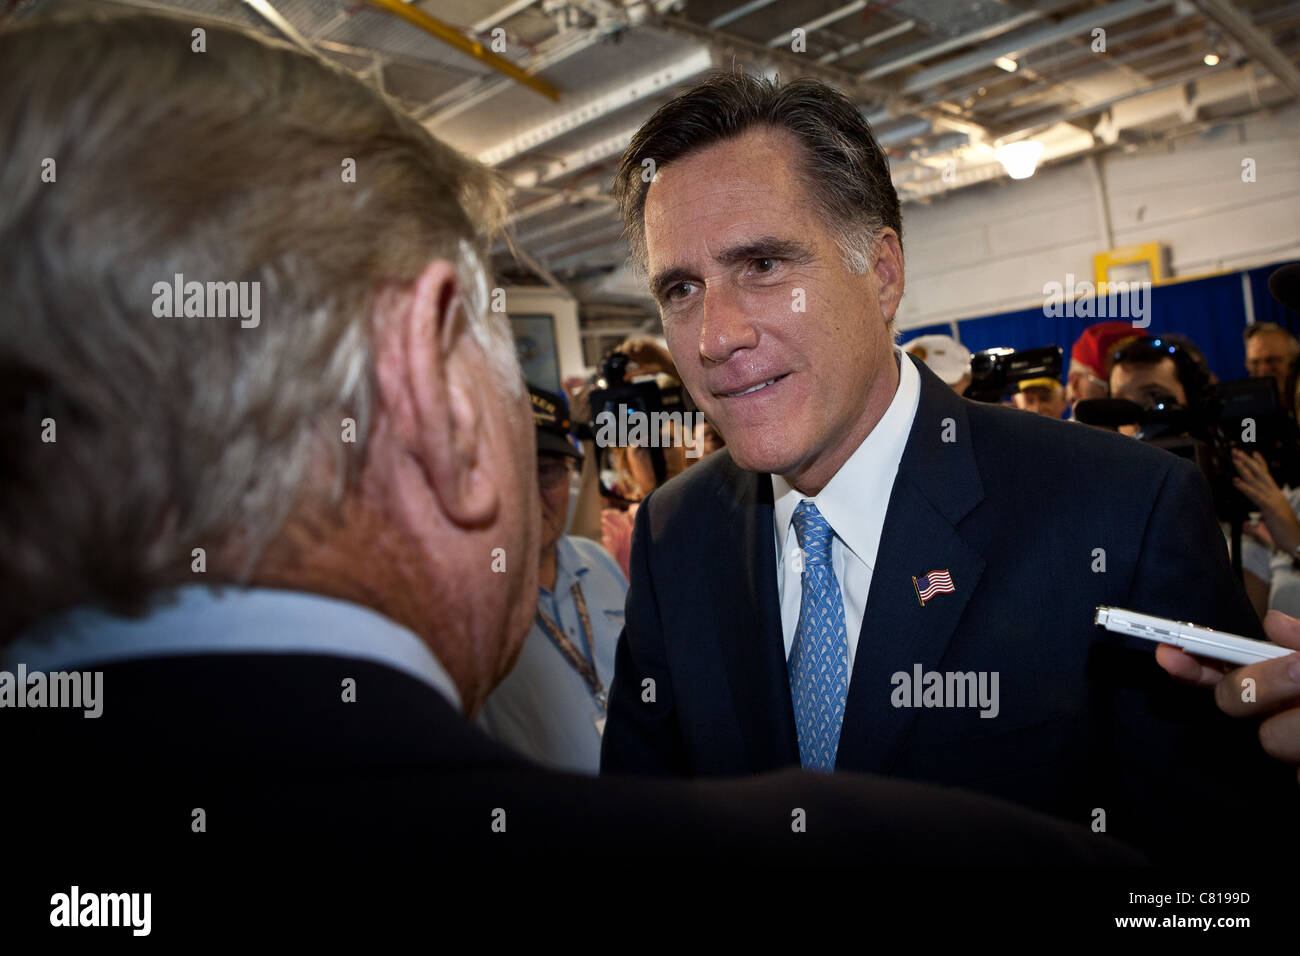 Le candidat républicain Mitt Romney salue des anciens combattants militaires au cours d'une visite au porte-avions USS Yorktown museu Banque D'Images